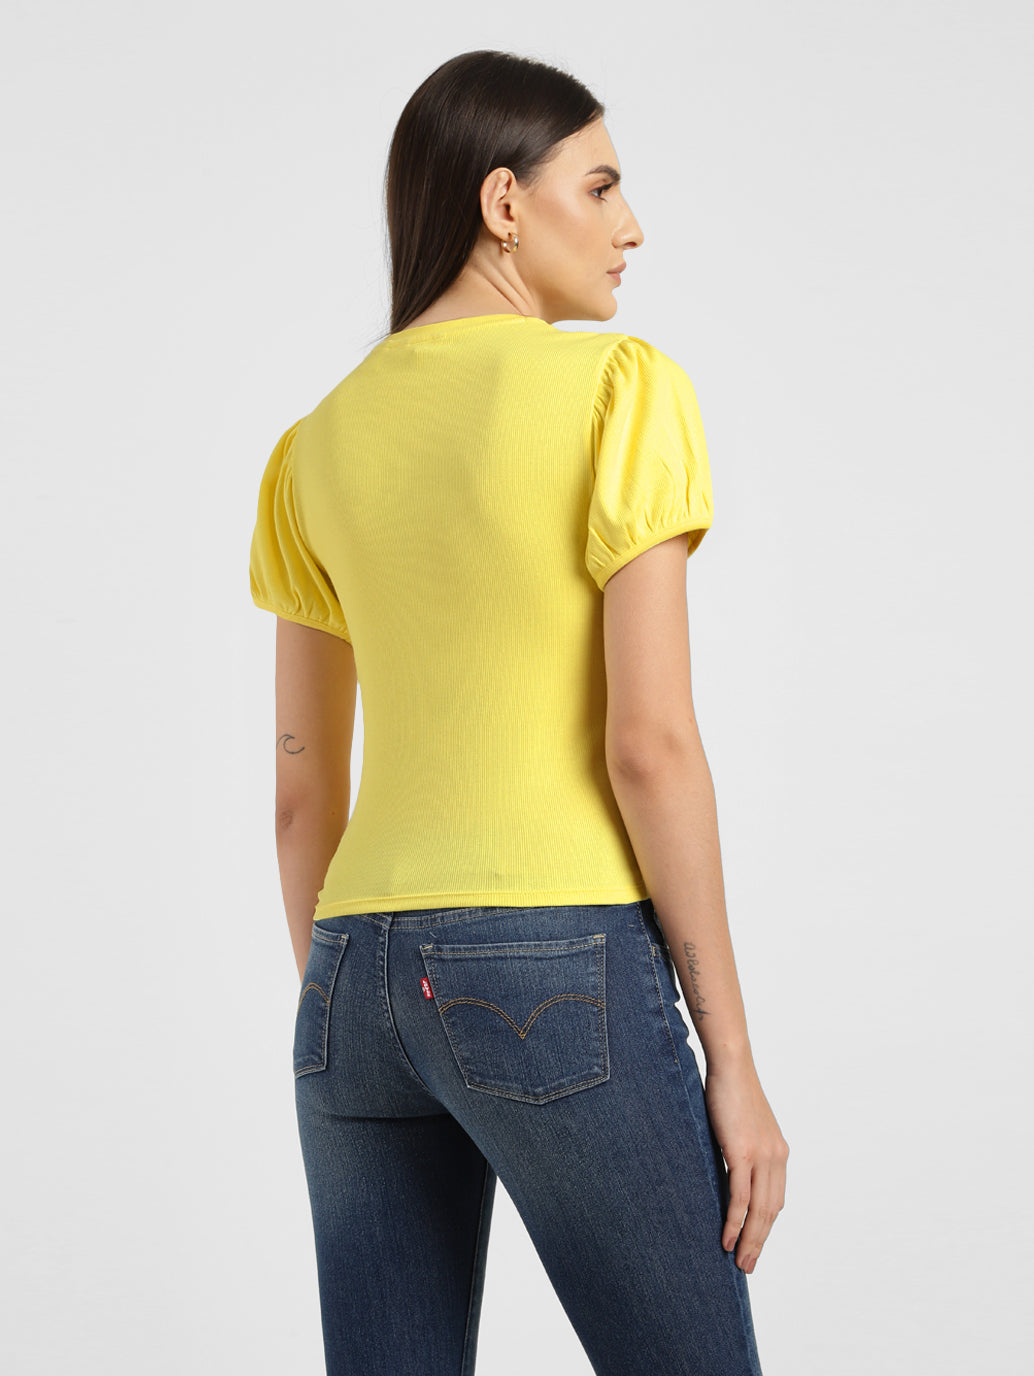 Women's Solid Slim Fit Top